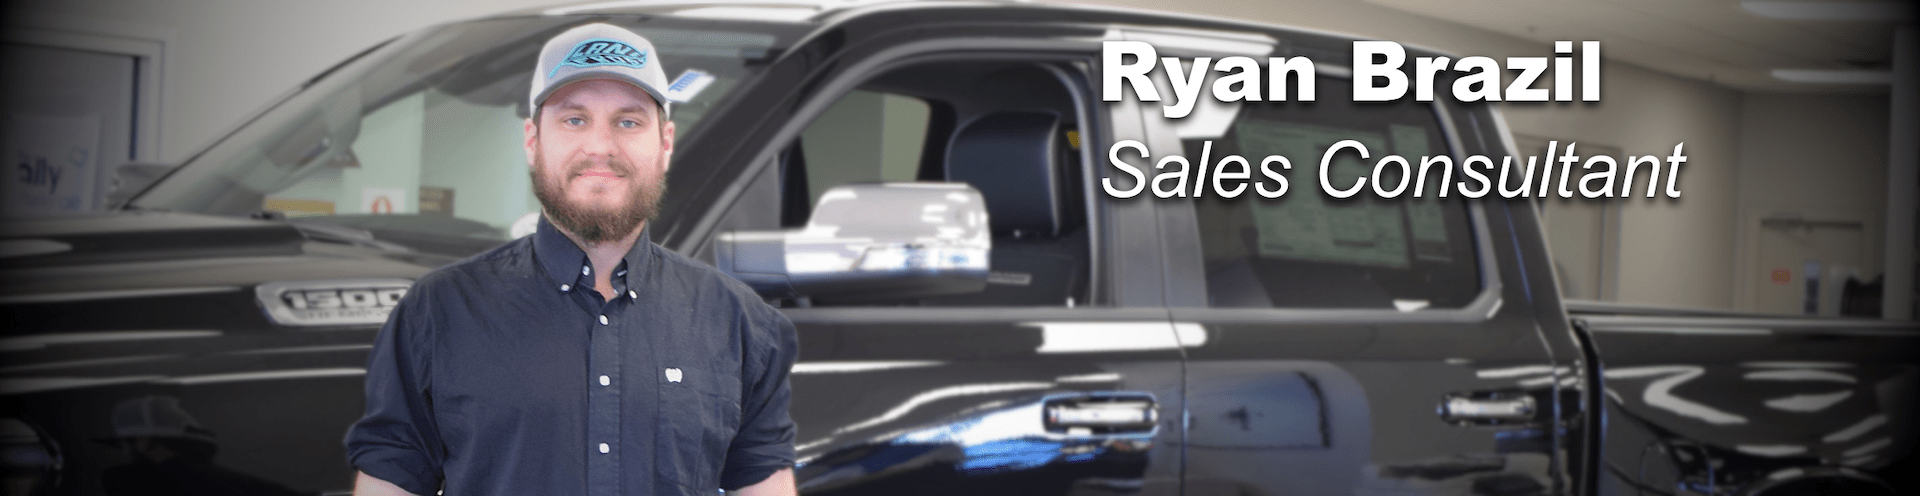 ryan brazil sales consultant prestige chrysler dodge jeep ram